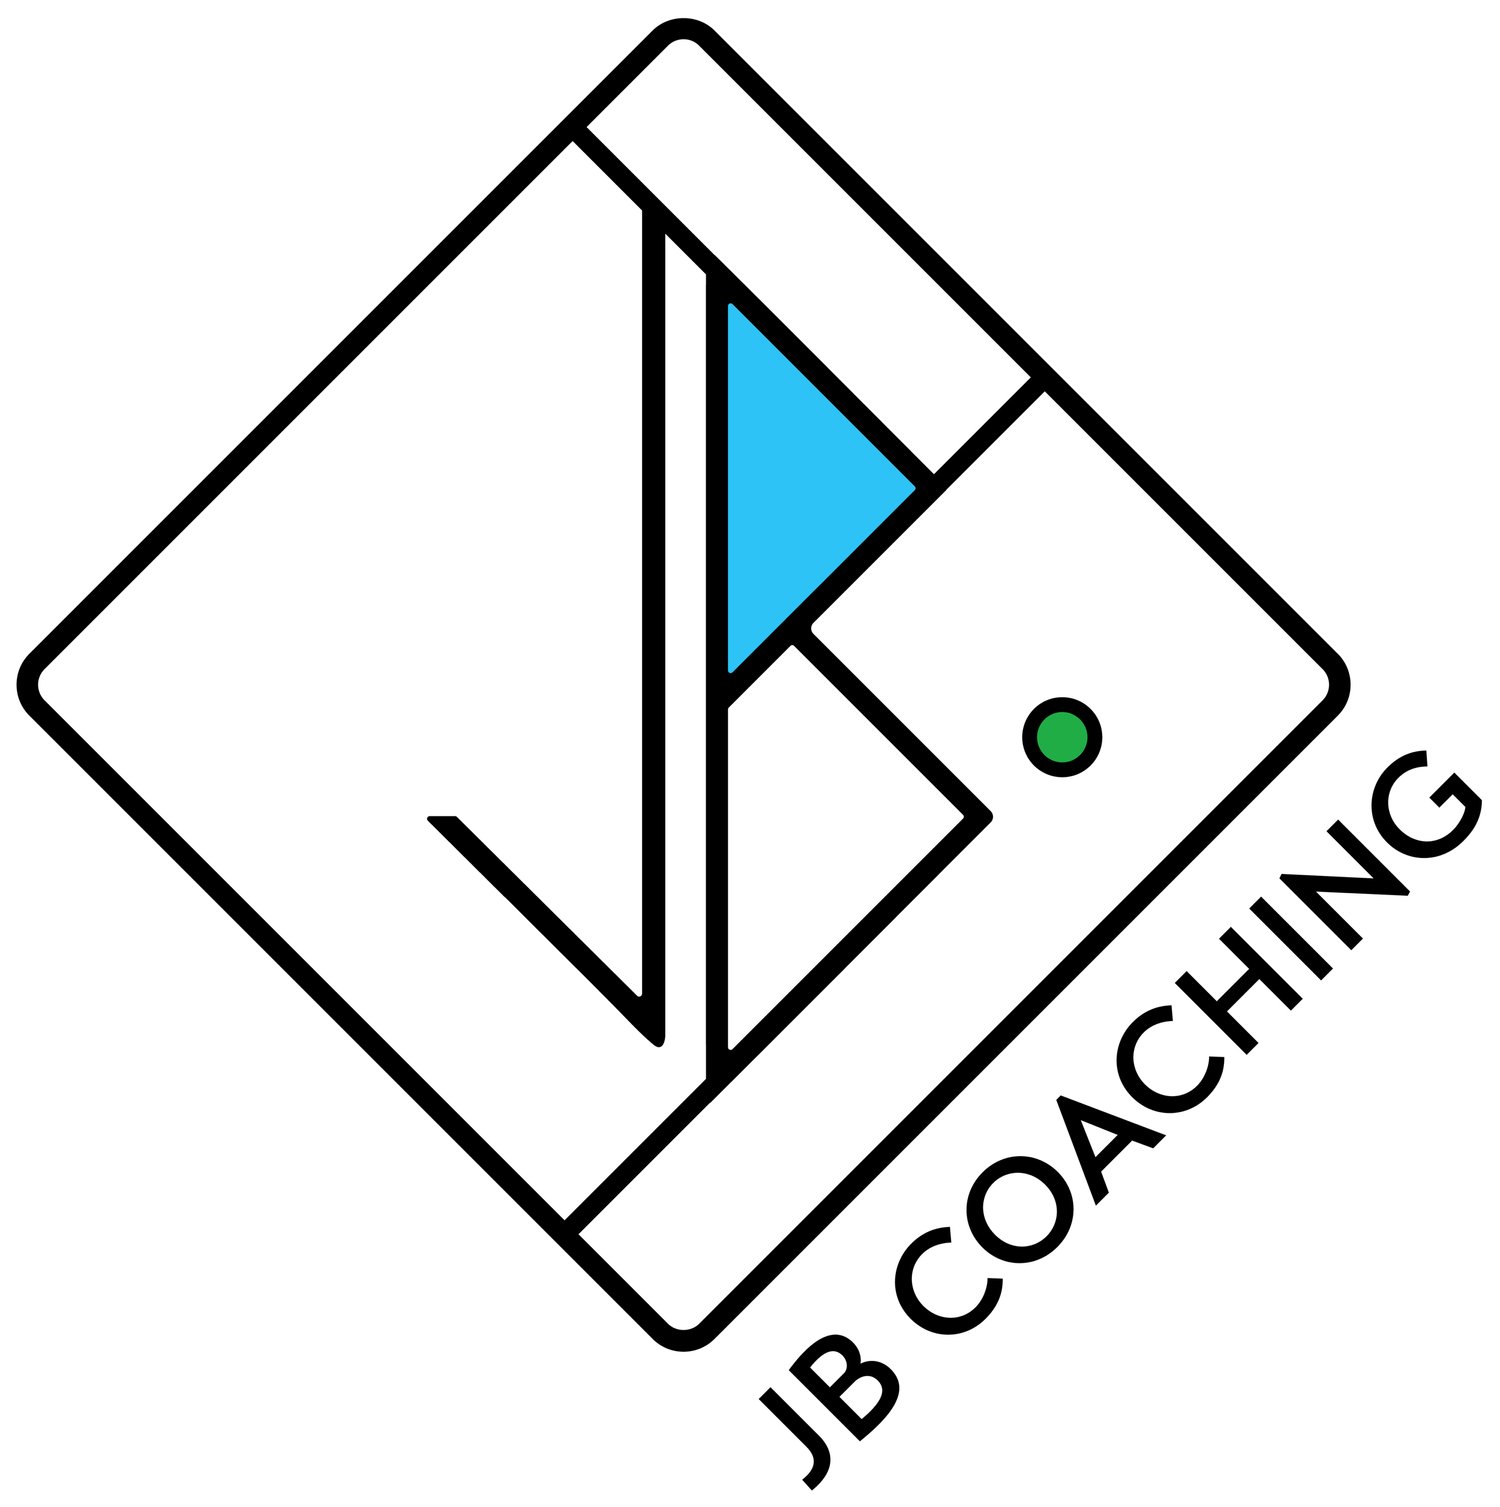 JB Coaching LLC